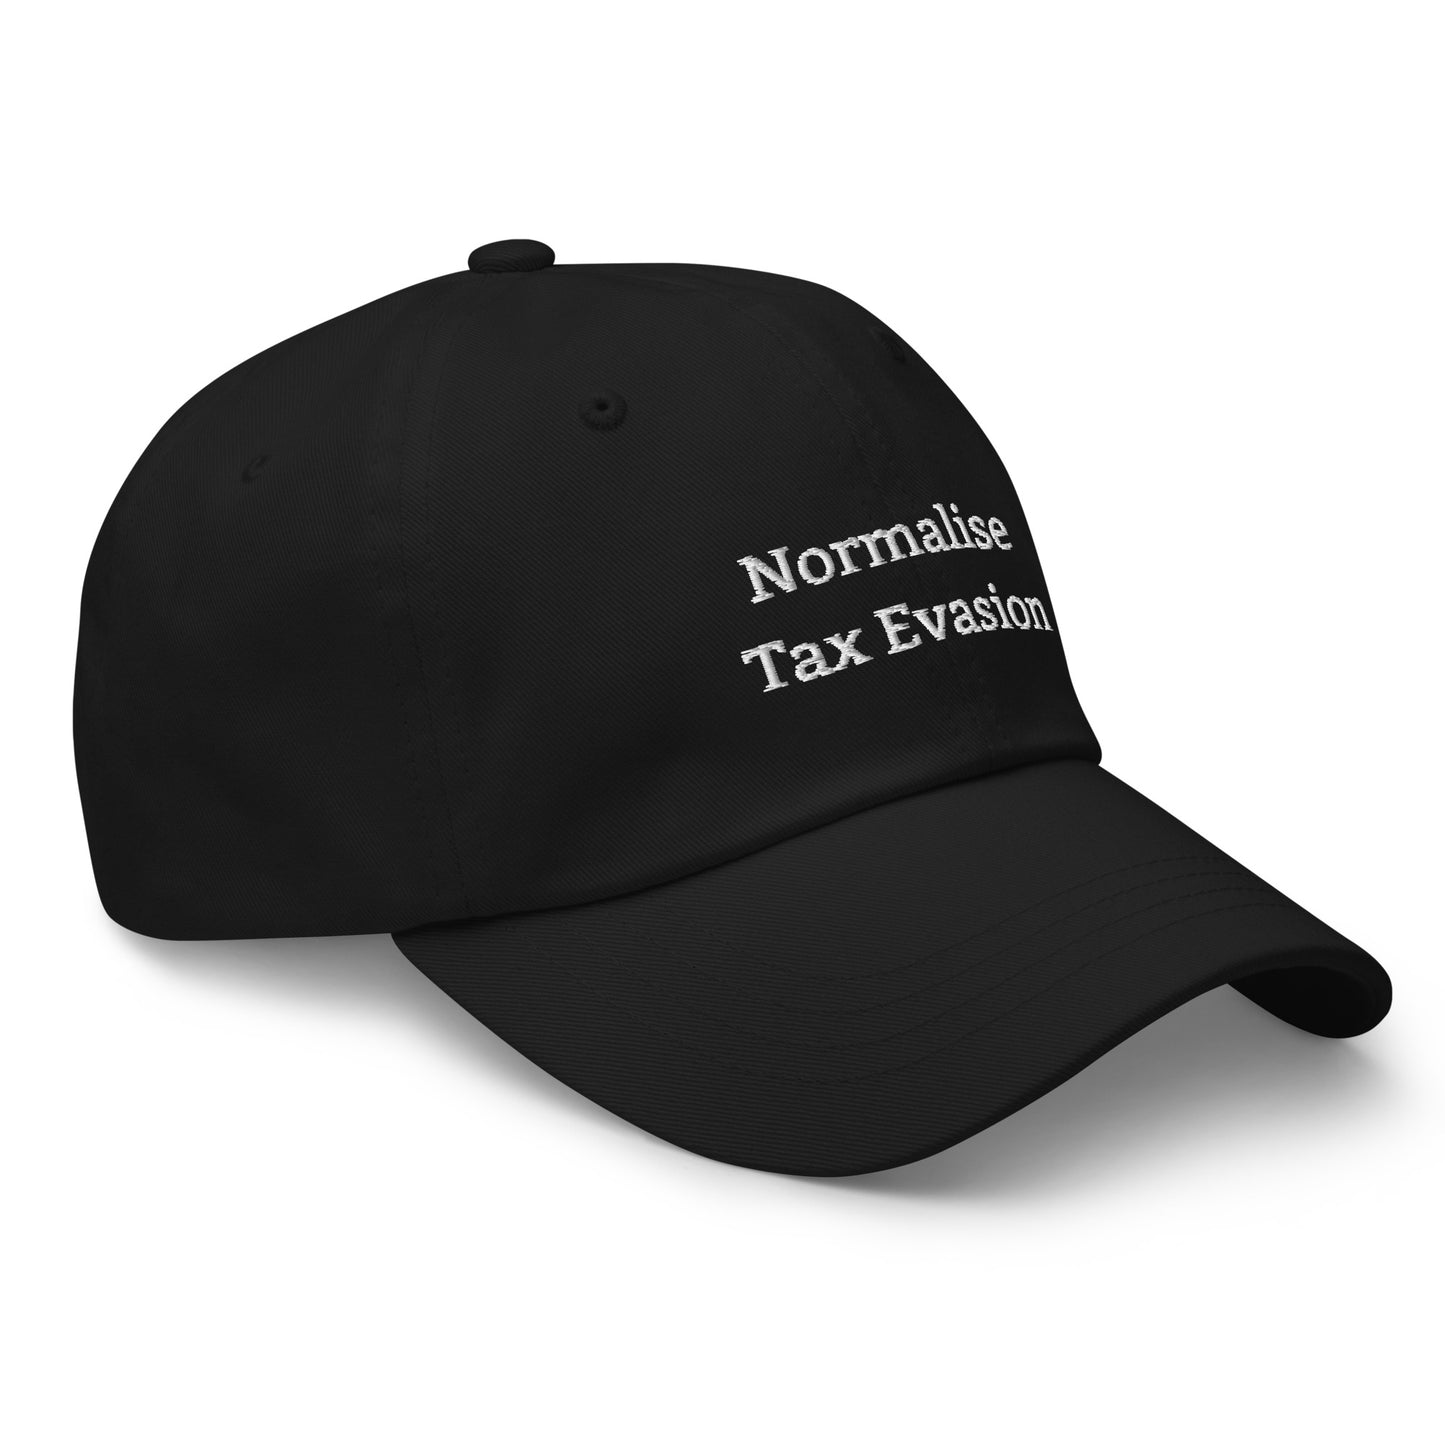 Tax Evasion Cap